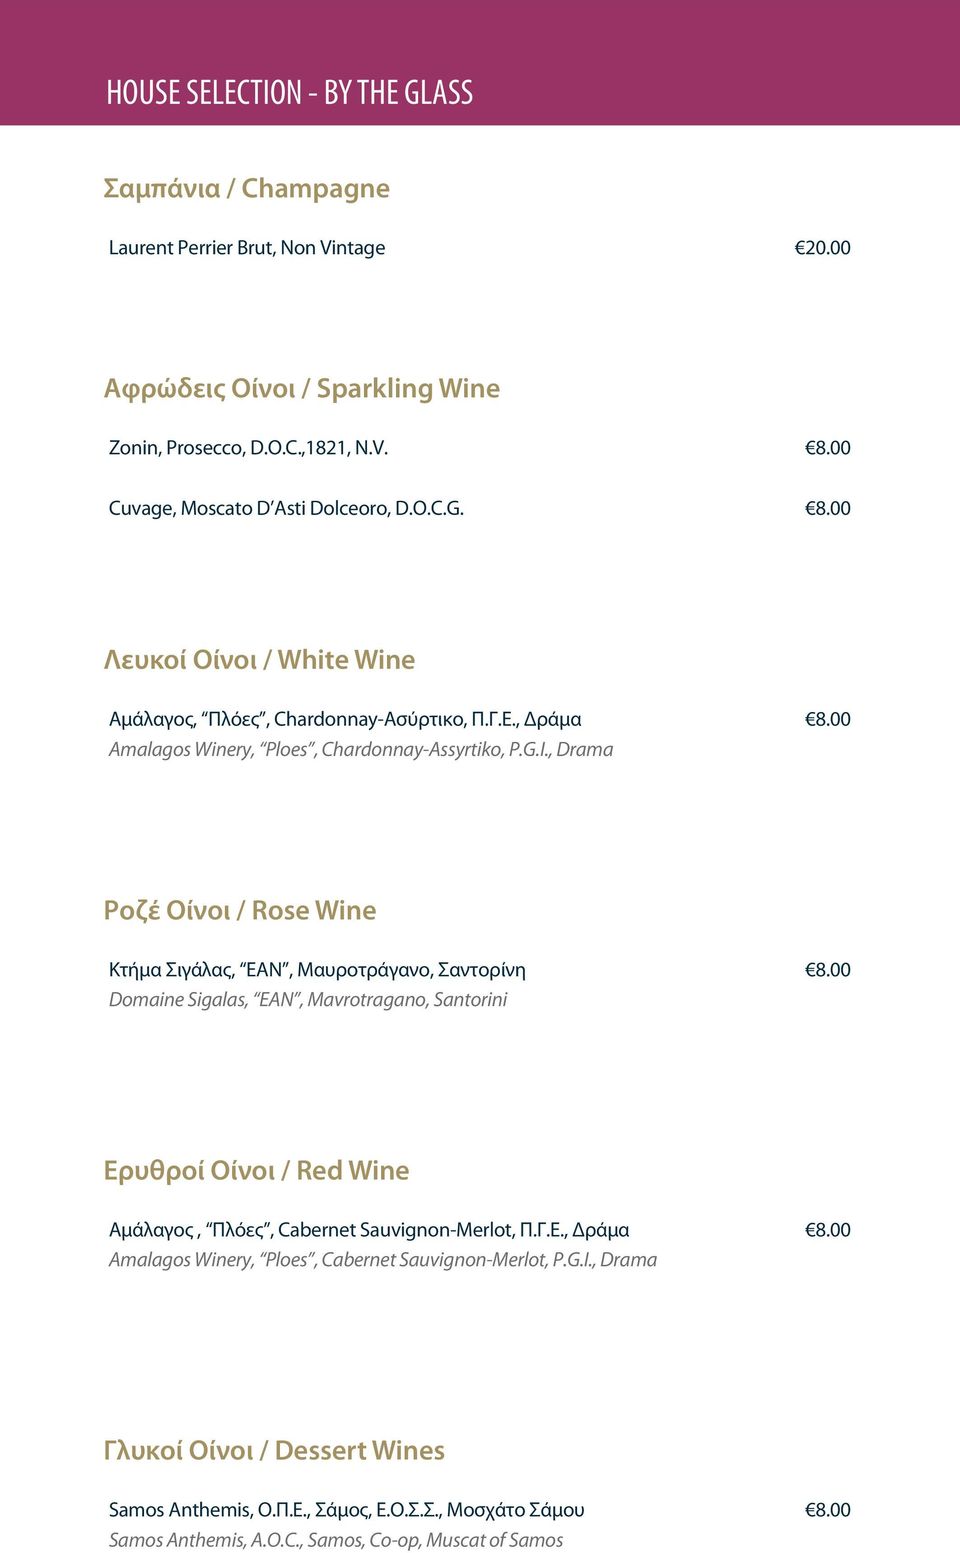 00 Ροζέ Οίνοι / Rose Wine Κτήμα Σιγάλας, EAN, Μαυροτράγανο, Σαντορίνη Domaine Sigalas, EAN, Mavrotragano, Santorini 8.00 Ερυθροί Οίνοι / Red Wine Αμάλαγος, Πλόες, Cabernet Sauvignon-Merlot, Π.